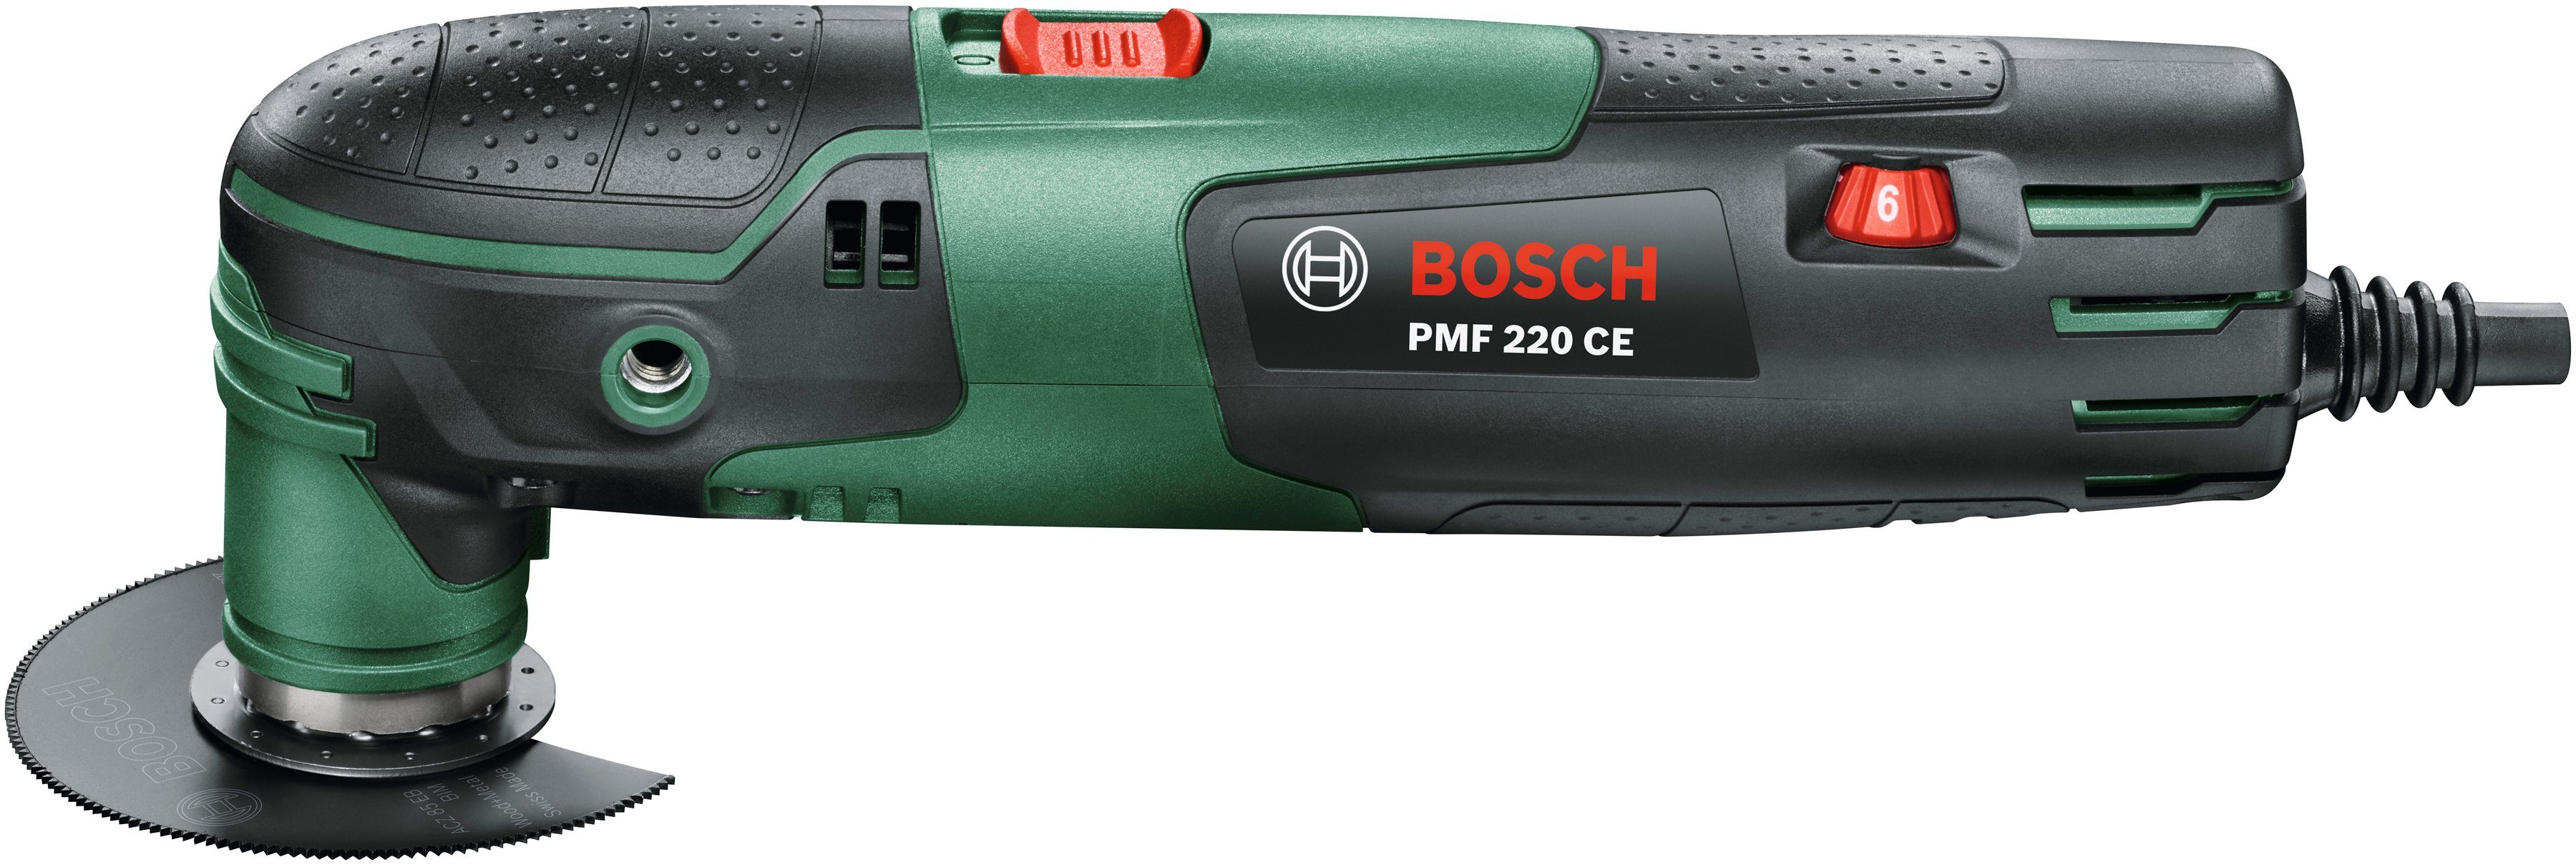 Bosch Home & Garden Elektro-Multifunktionswerkzeug inkl. CE, W, PMF 220 220 Kunststoffkoffer und Zubehör